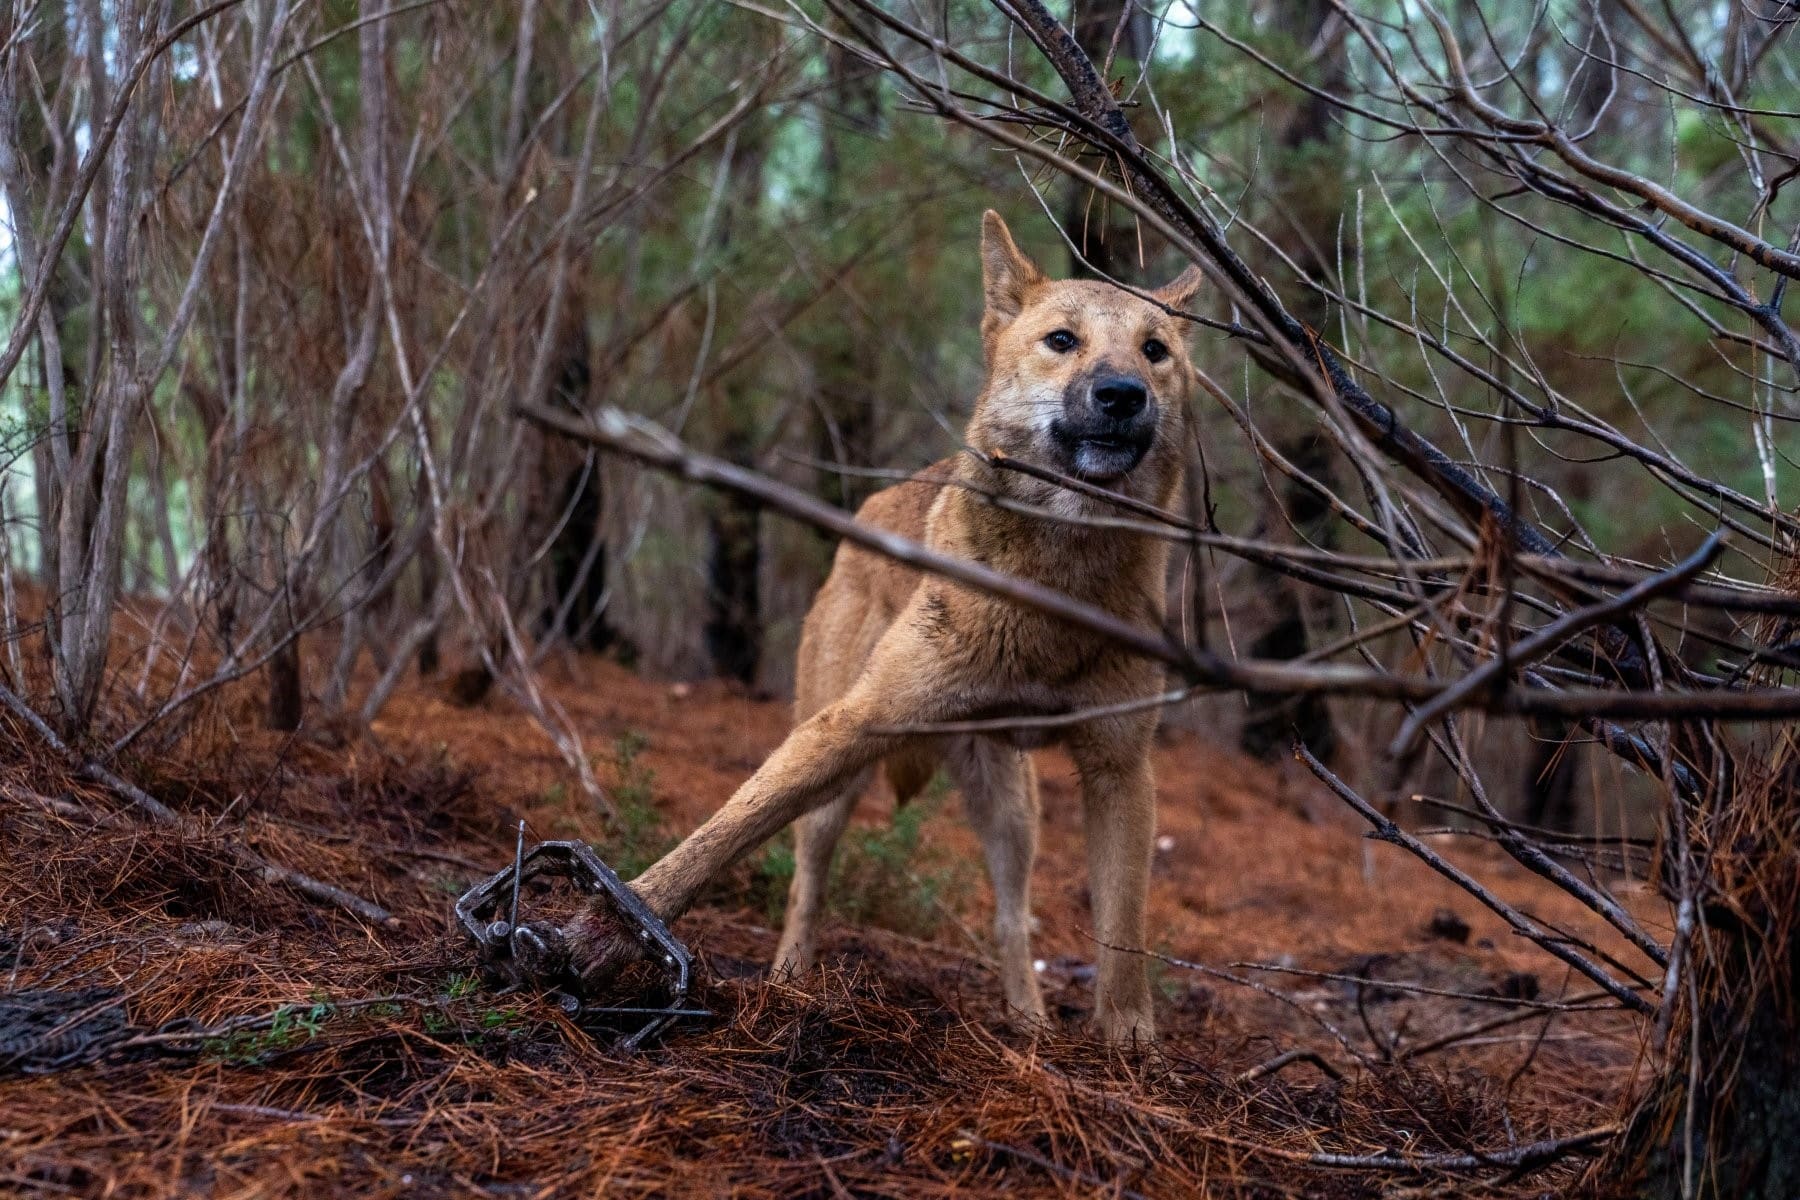 Protect dingoes across Australia